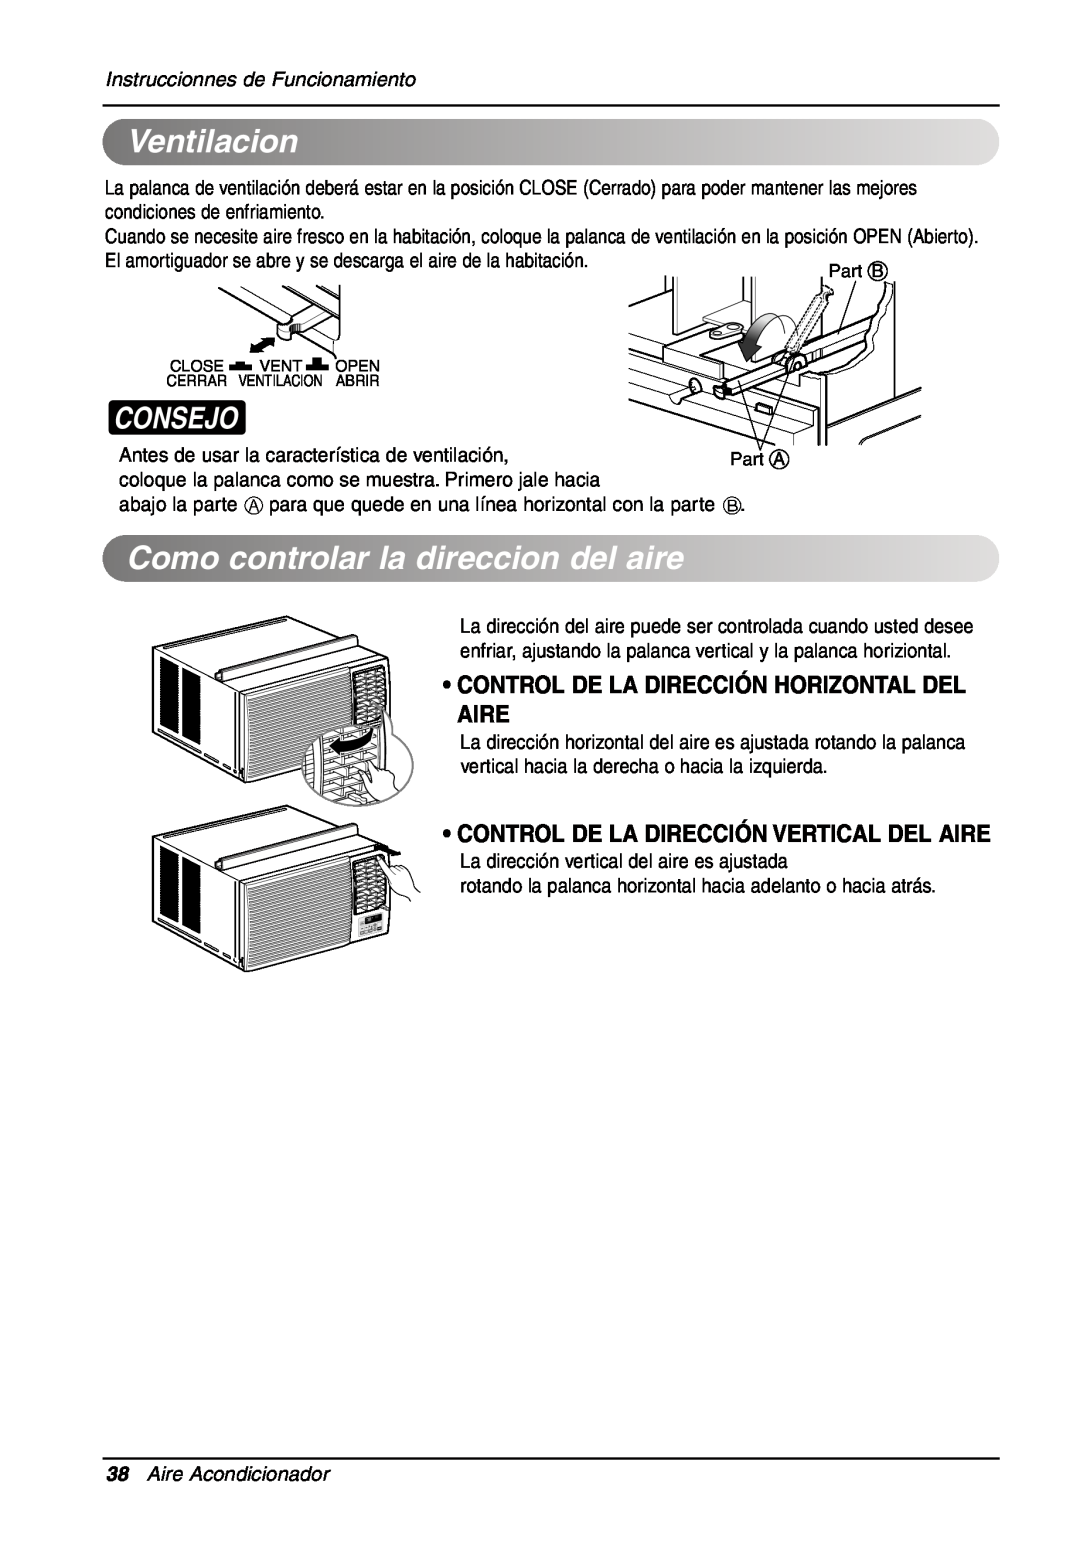 LG Electronics LW701 HR Ventilacion, Como controlarladirecciondel aire, Consejo, Instruccionnes de Funcionamiento 